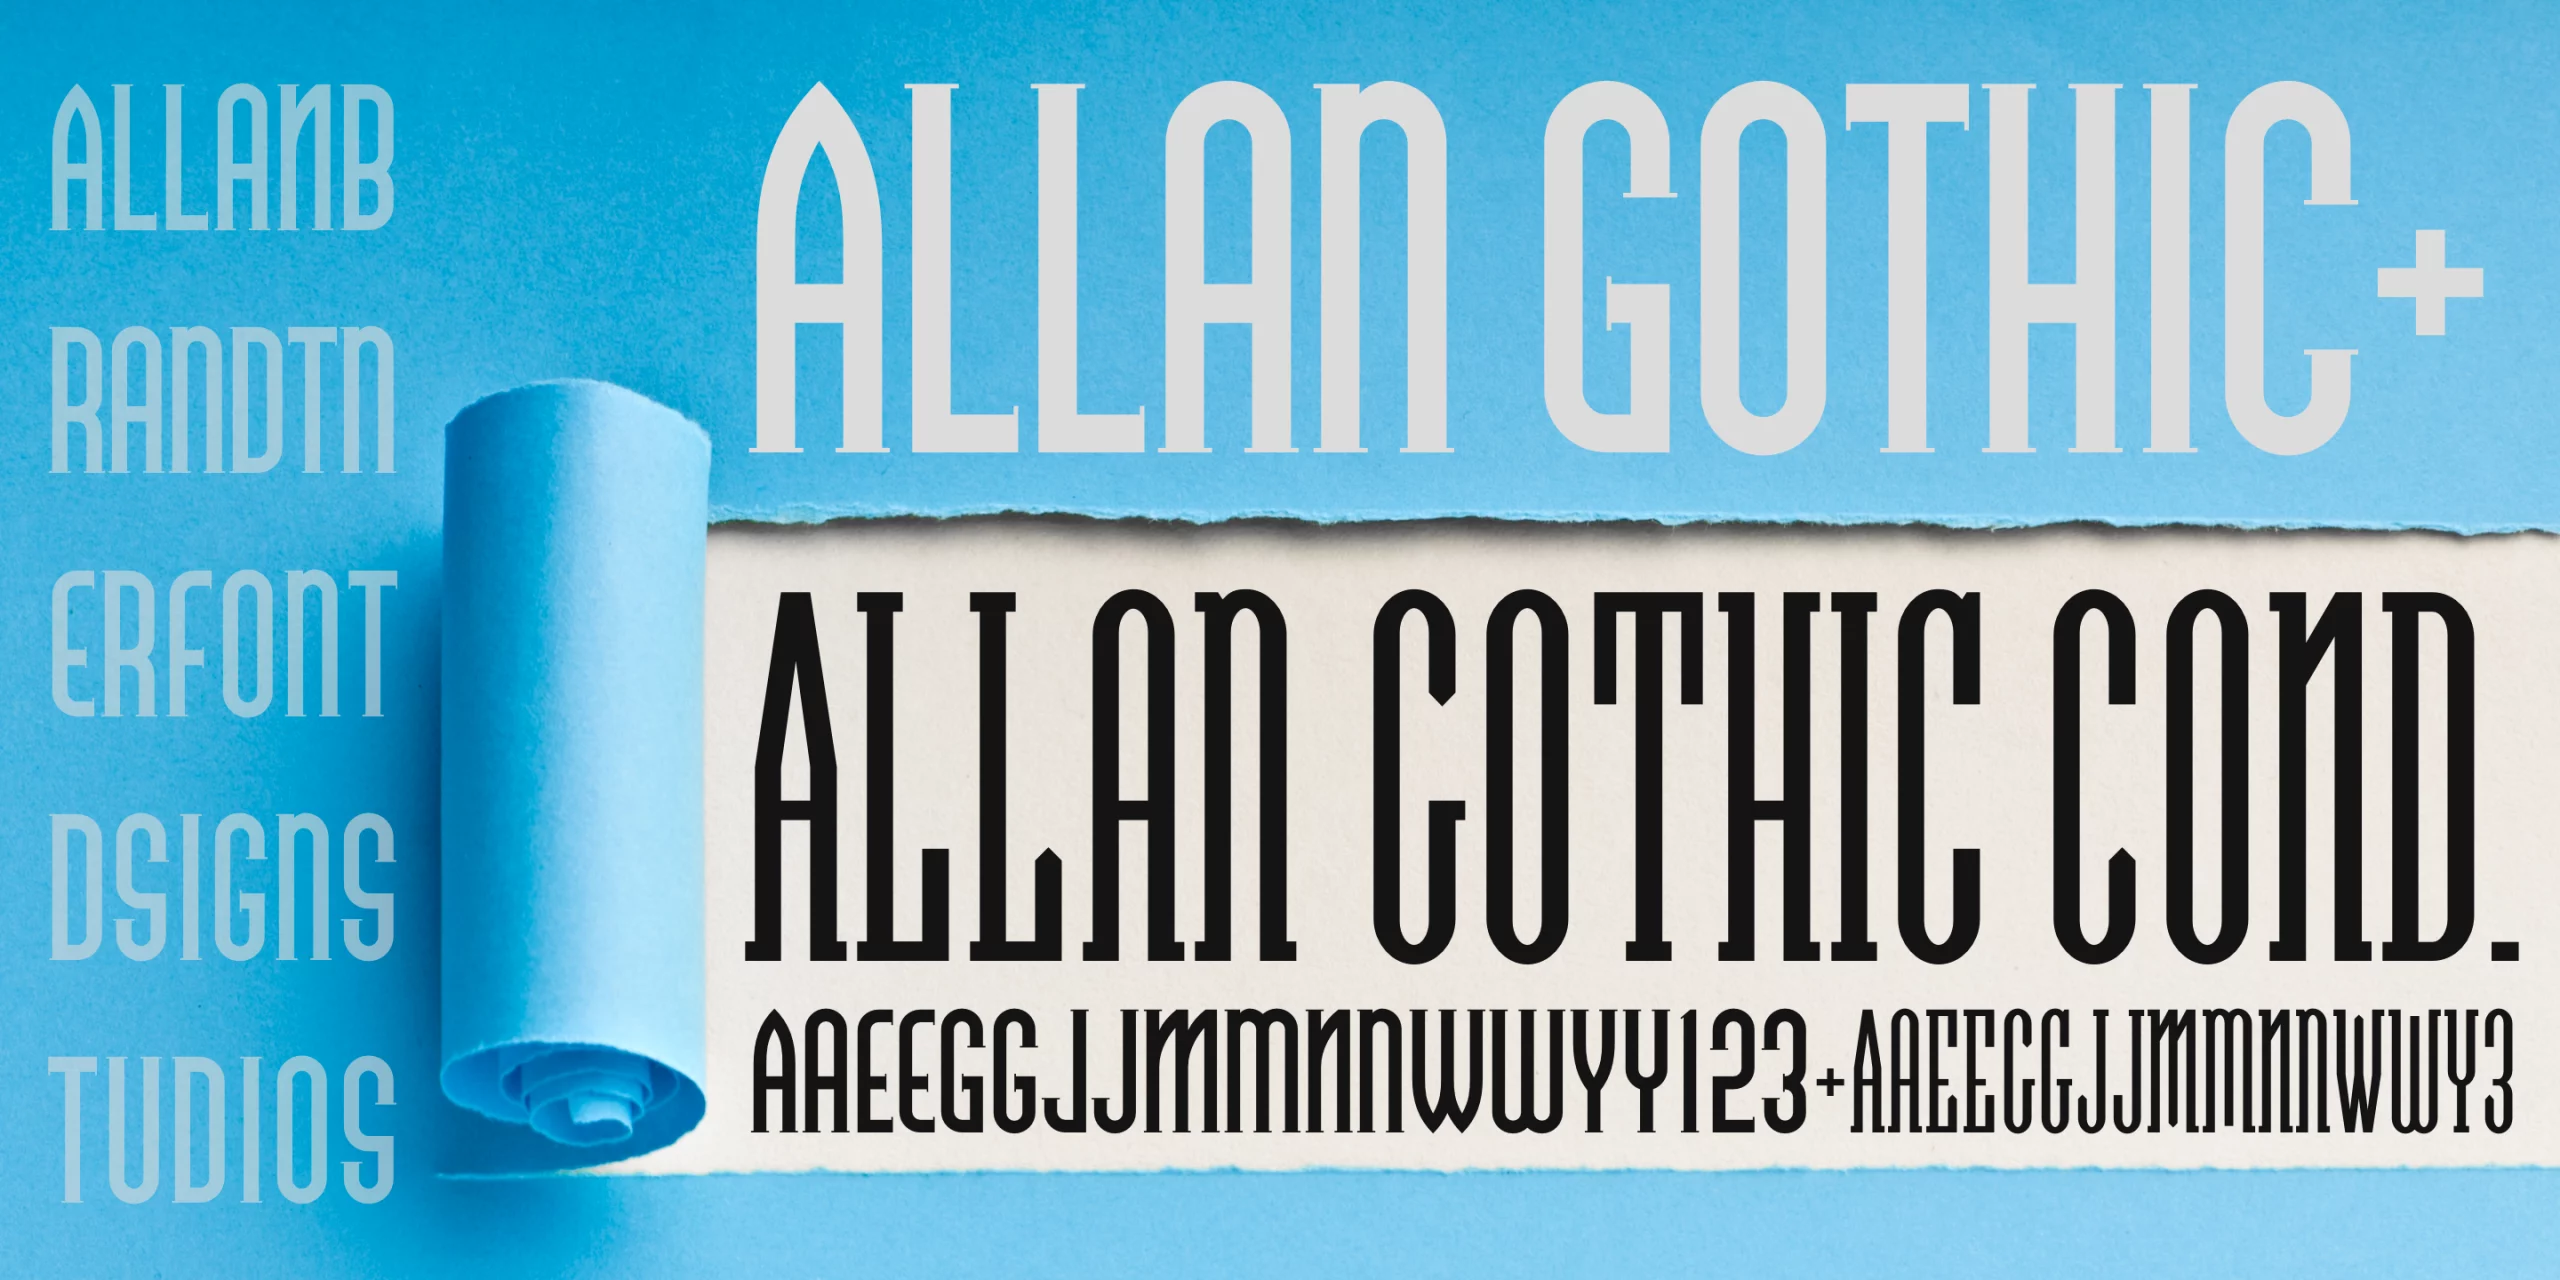 Allan Gothic